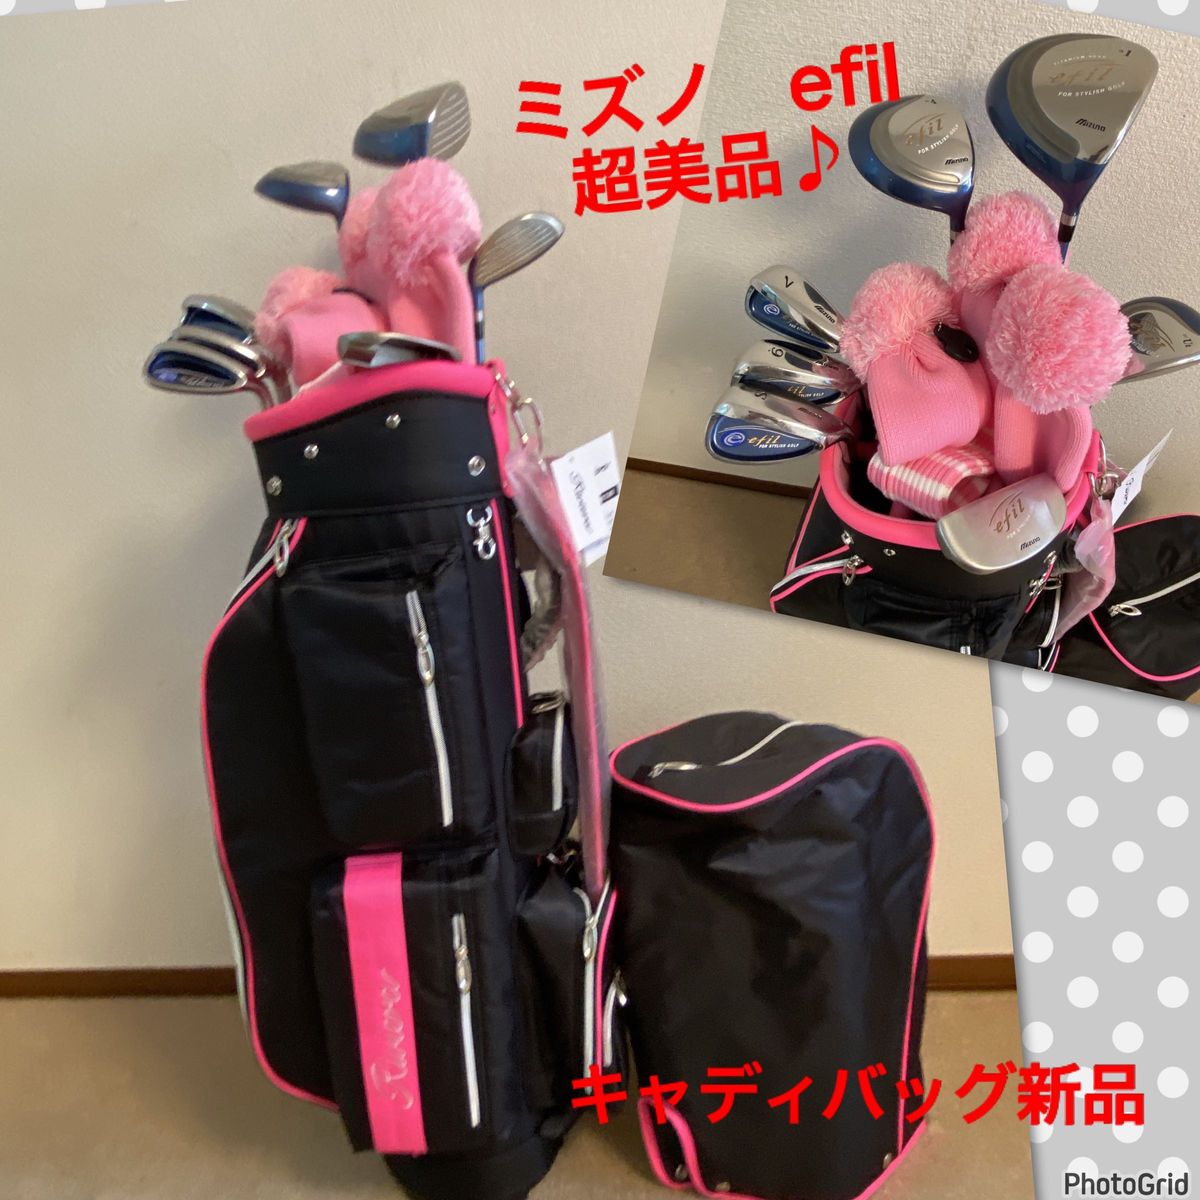 人気 【超美品】ミズノ エフィル／レディース ゴルフクラブセット 女性